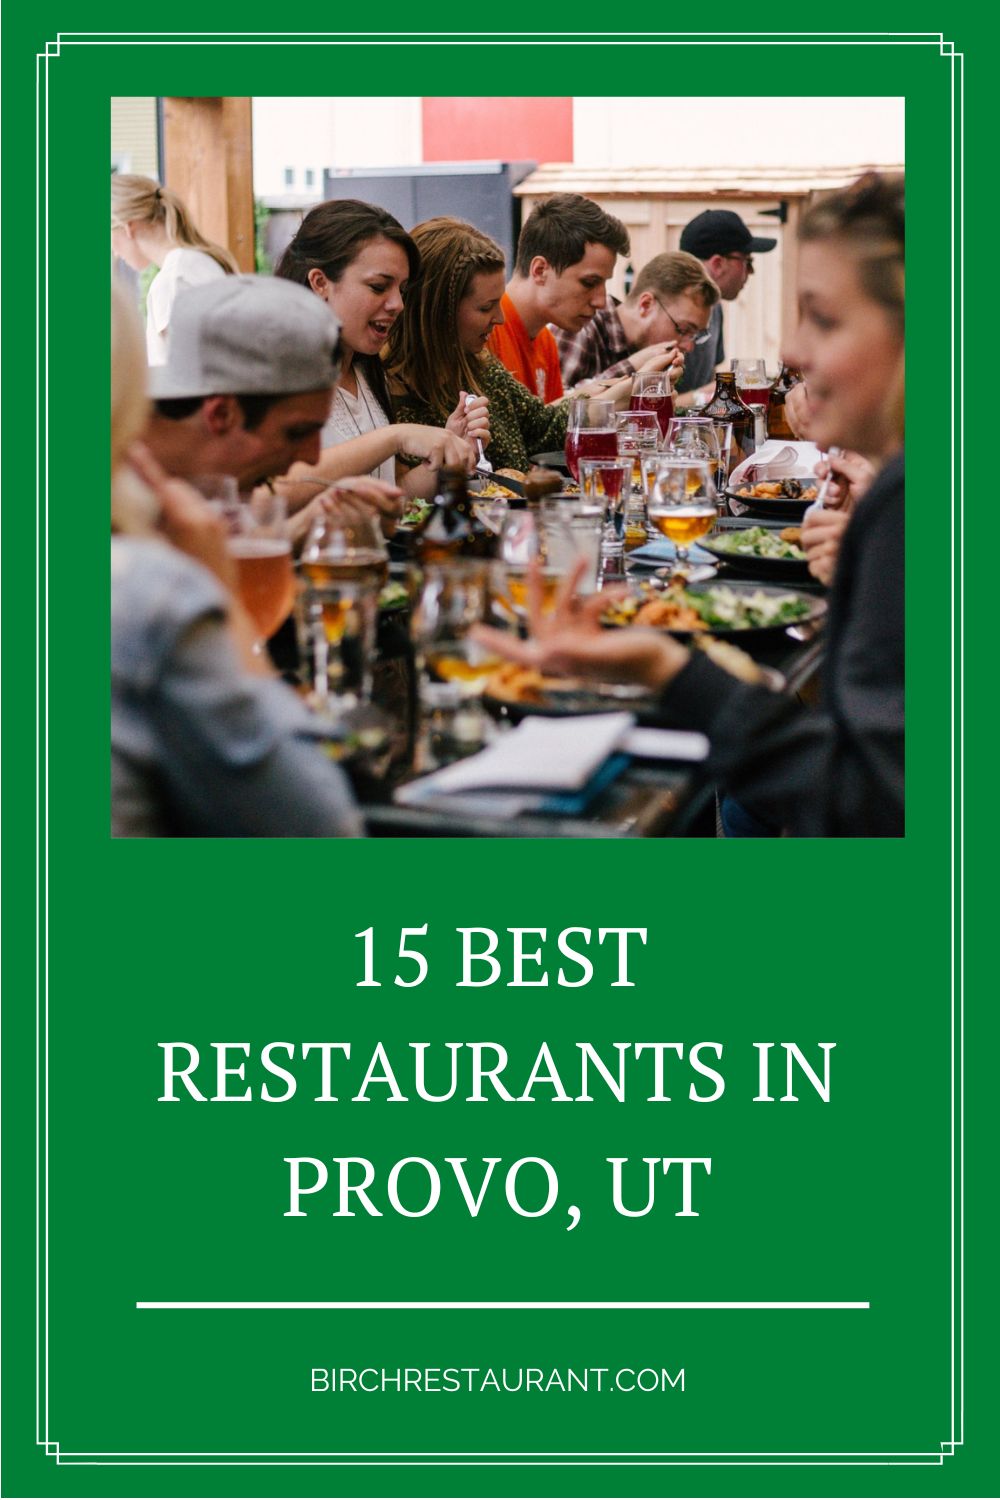 Best Restaurants in Provo